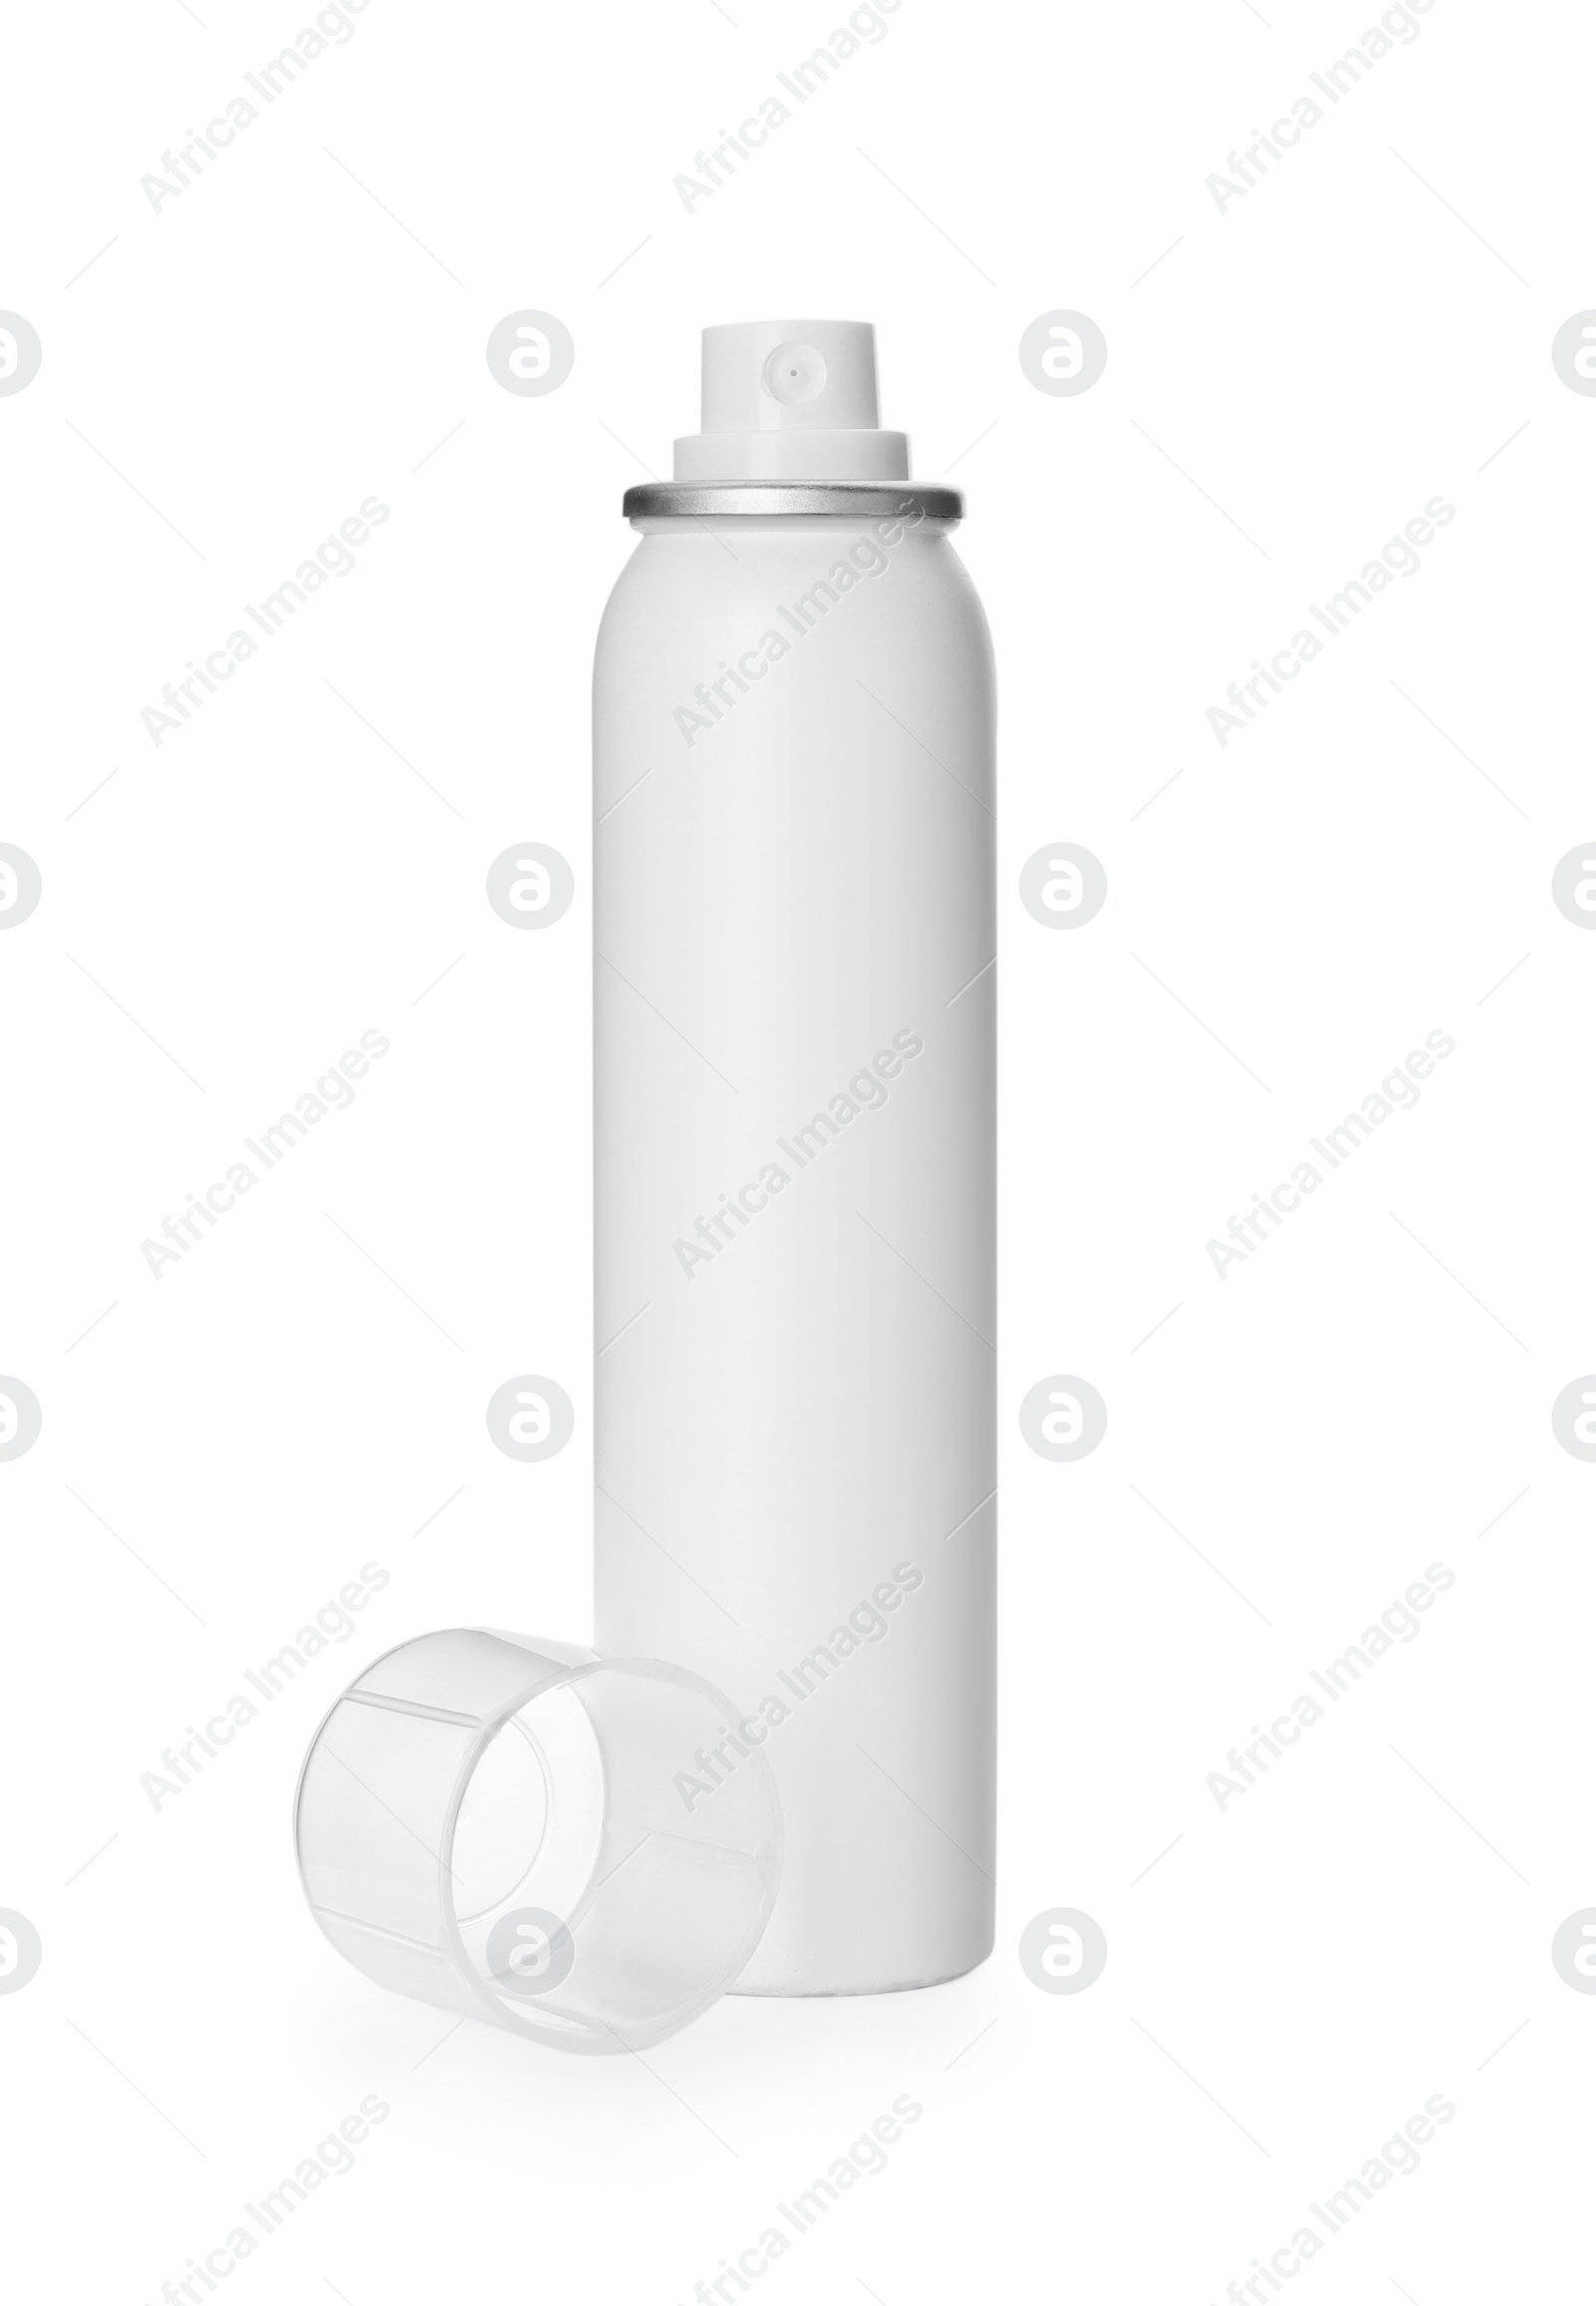 Photo of Bottle of dry shampoo isolated on white